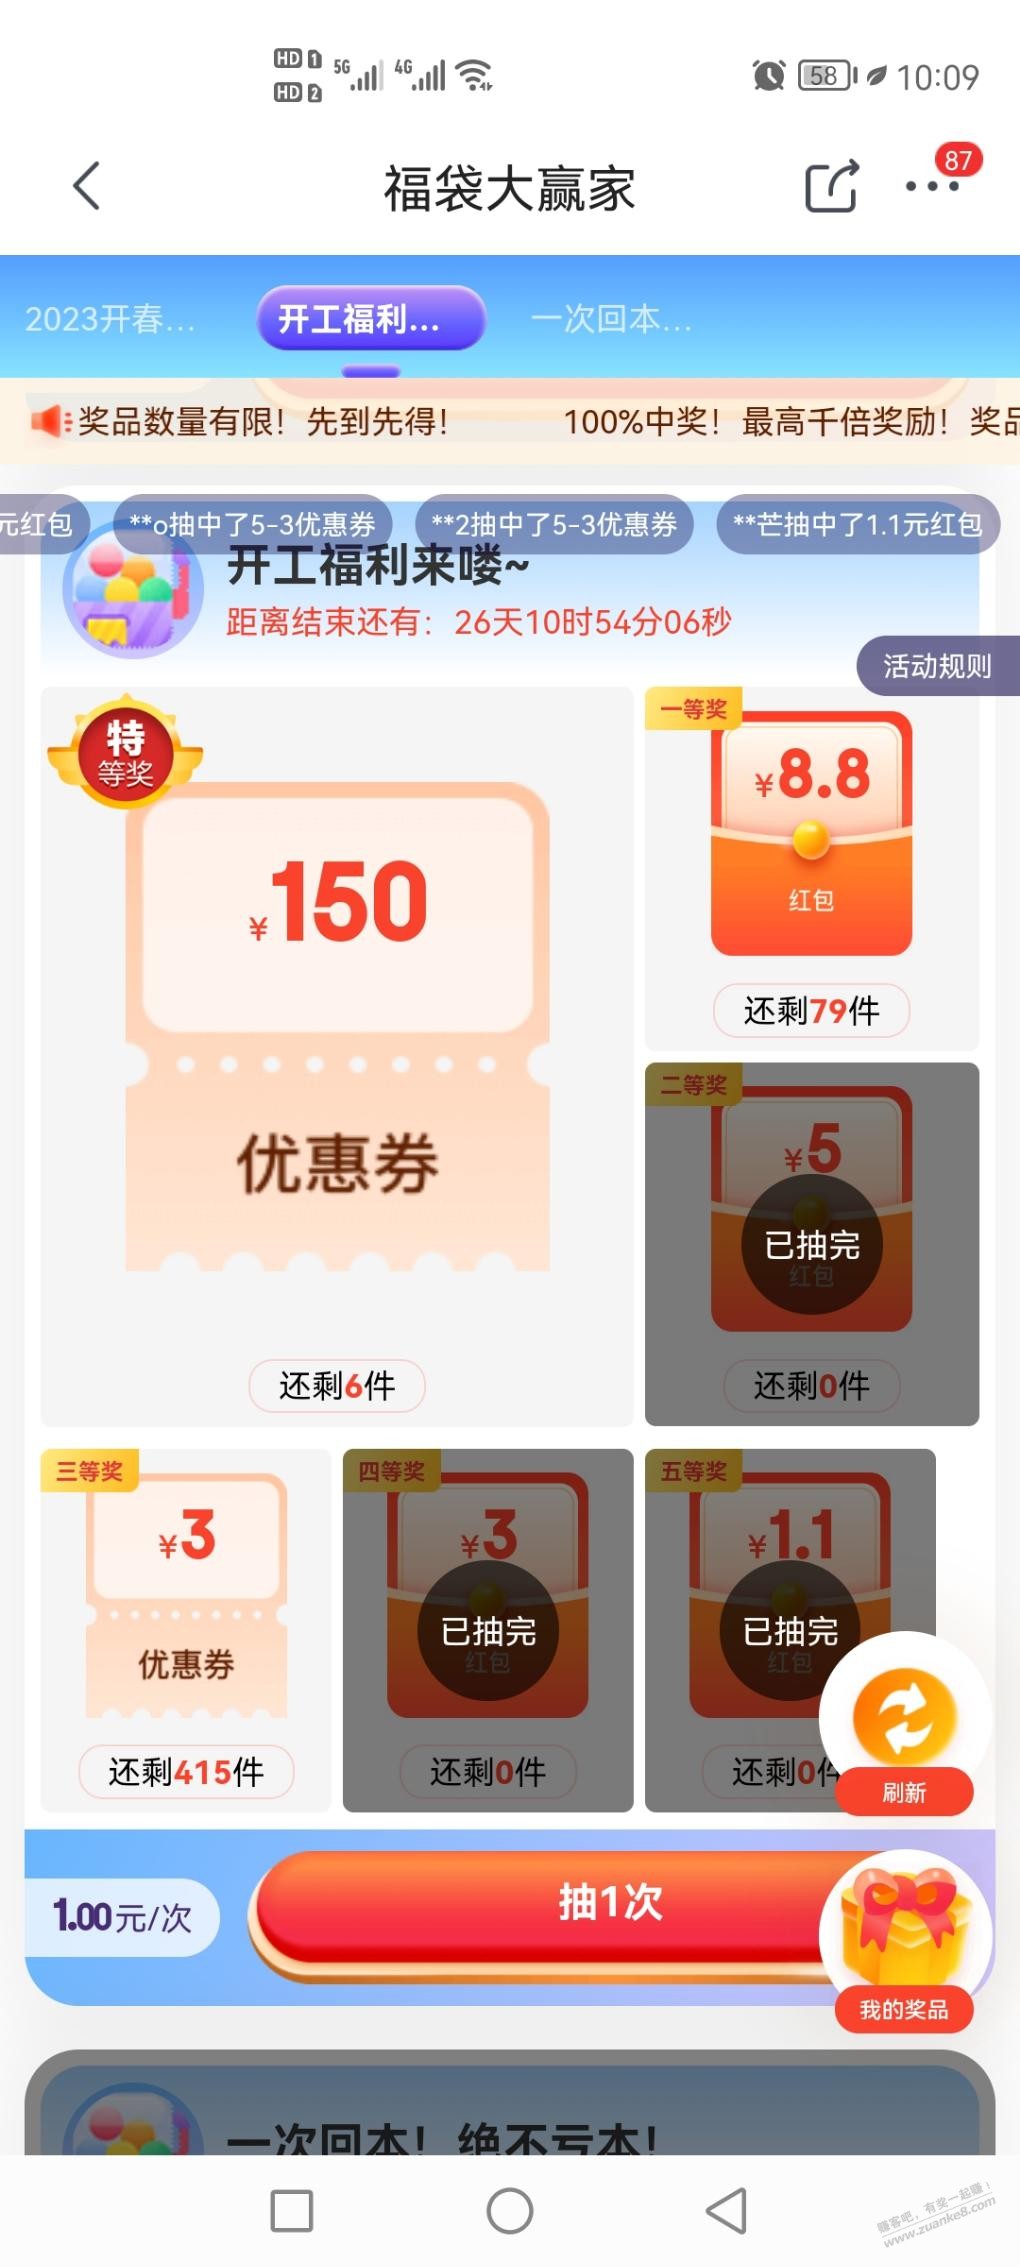 伏黛大赢家1.3的红包没了-惠小助(52huixz.com)